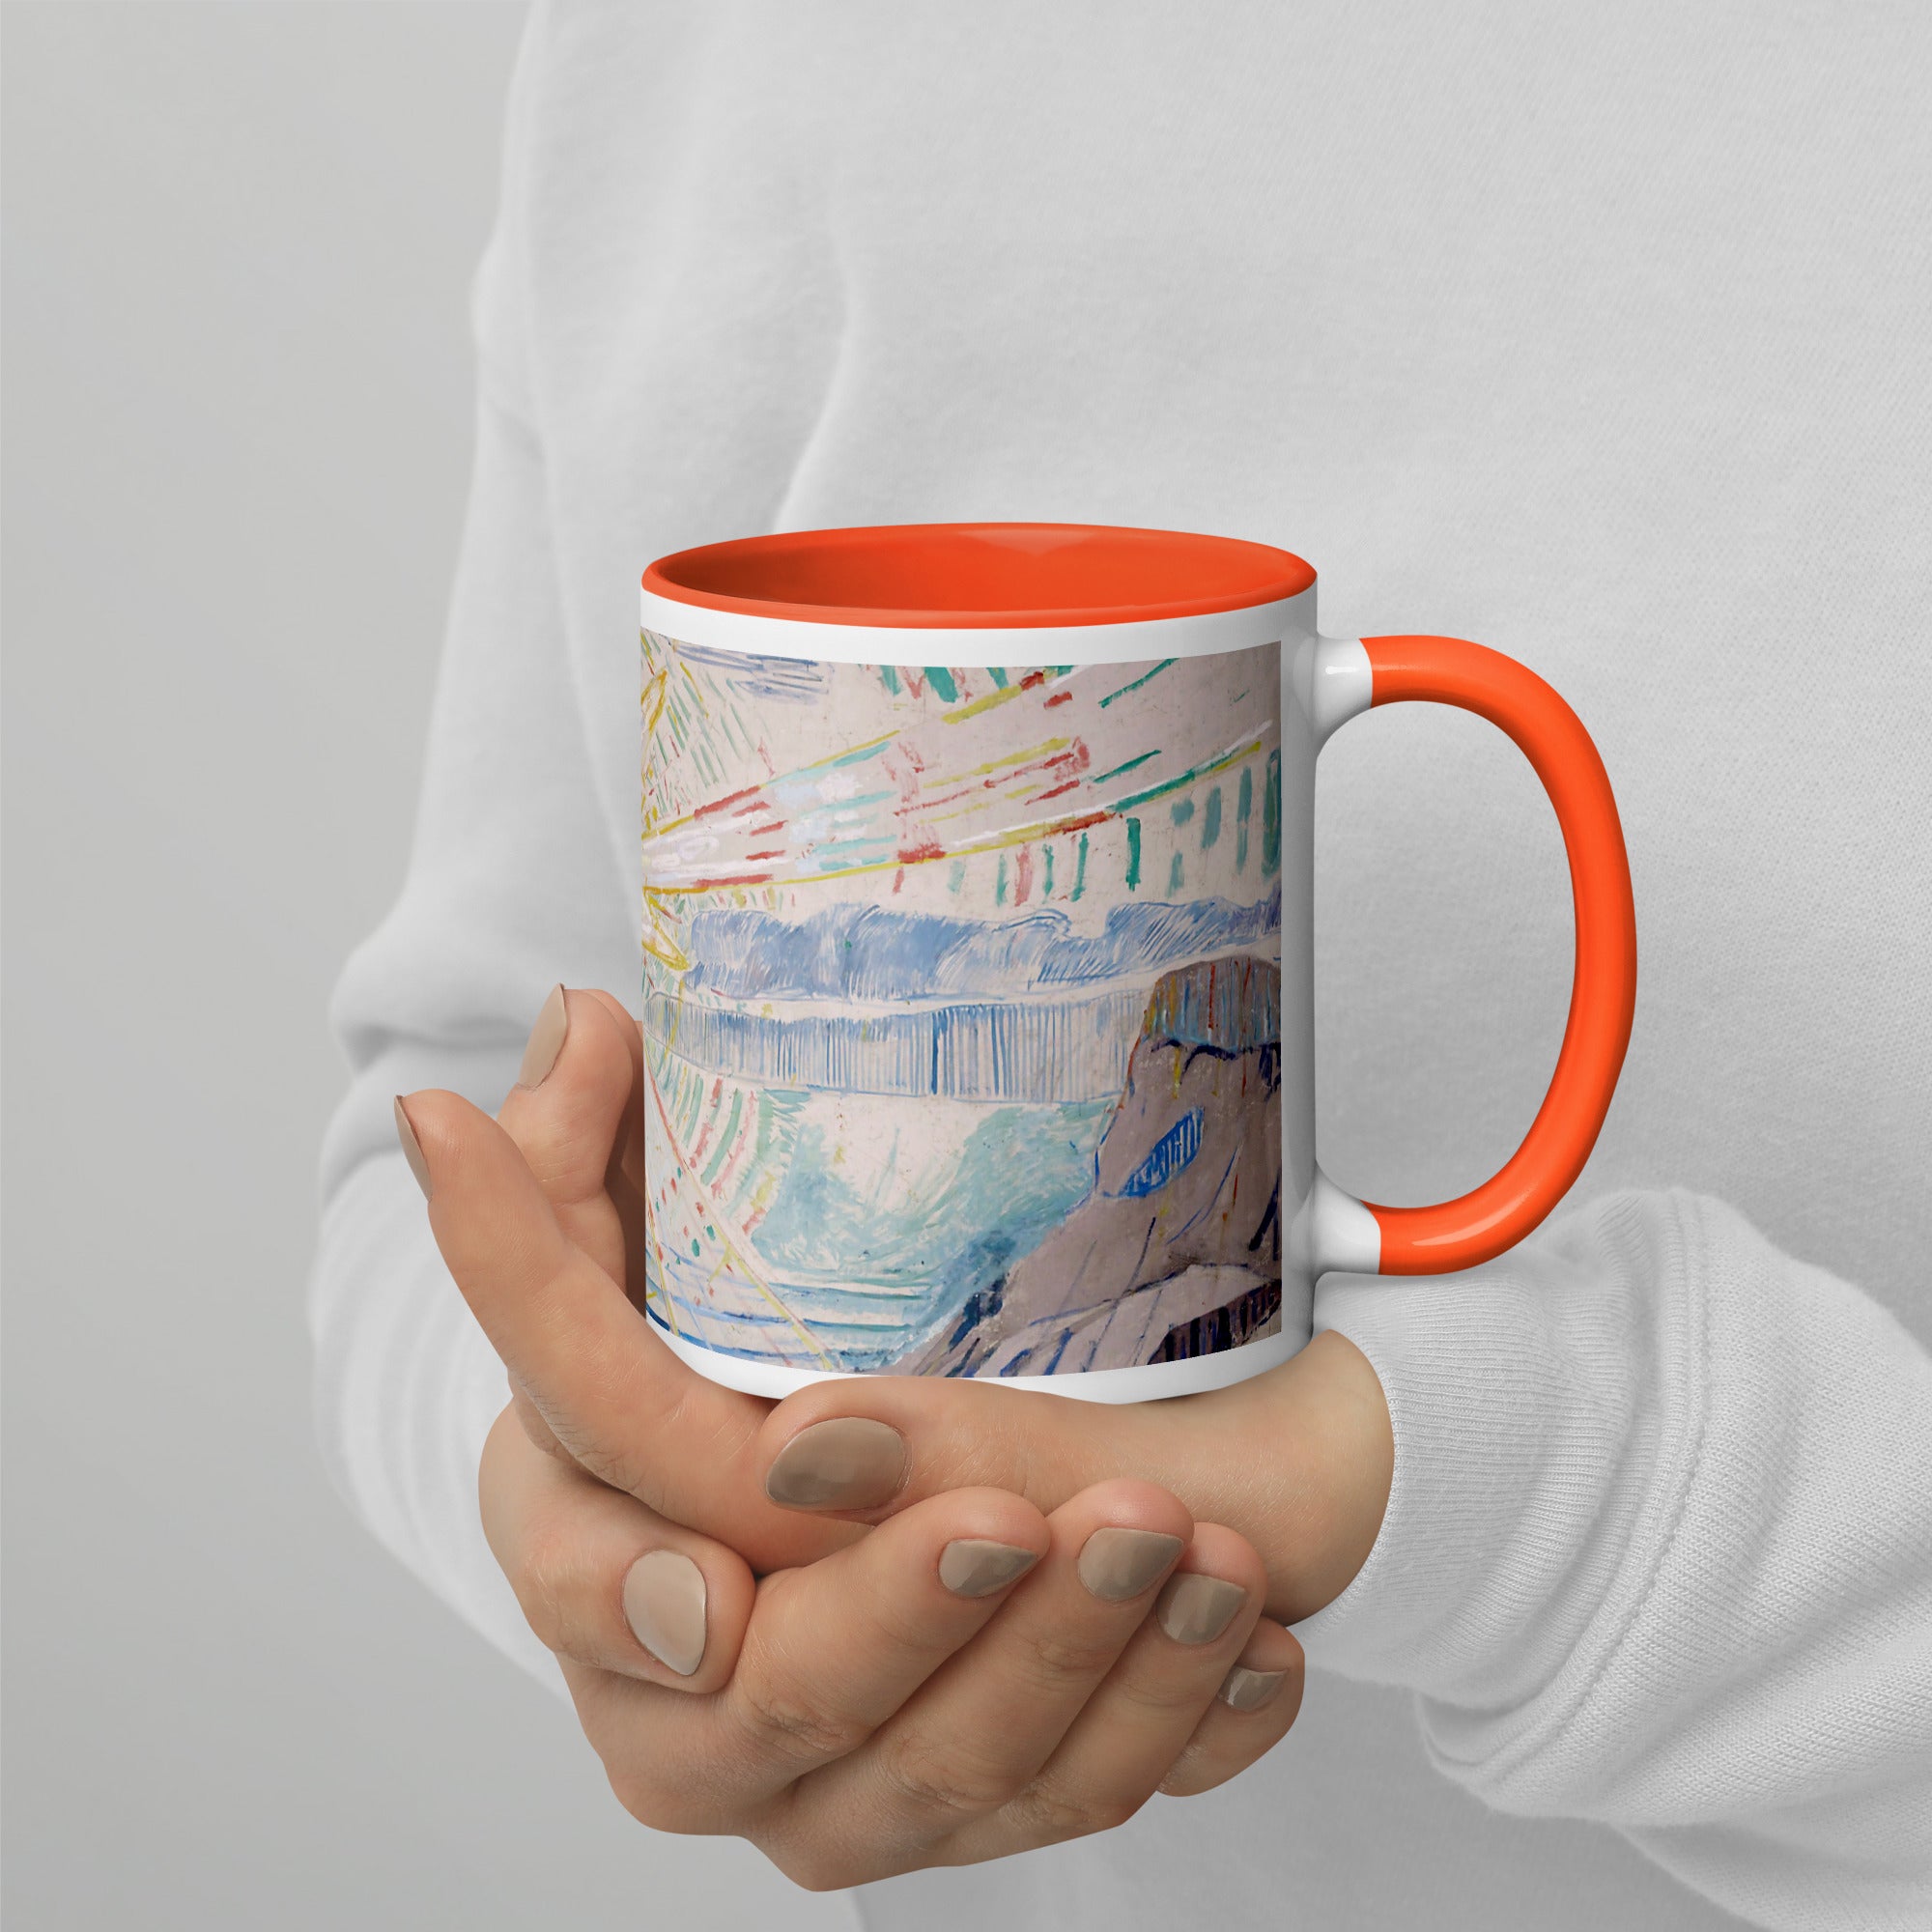 Edvard Munch 'The Sun' Famous Painting Ceramic Mug | Premium Art Mug